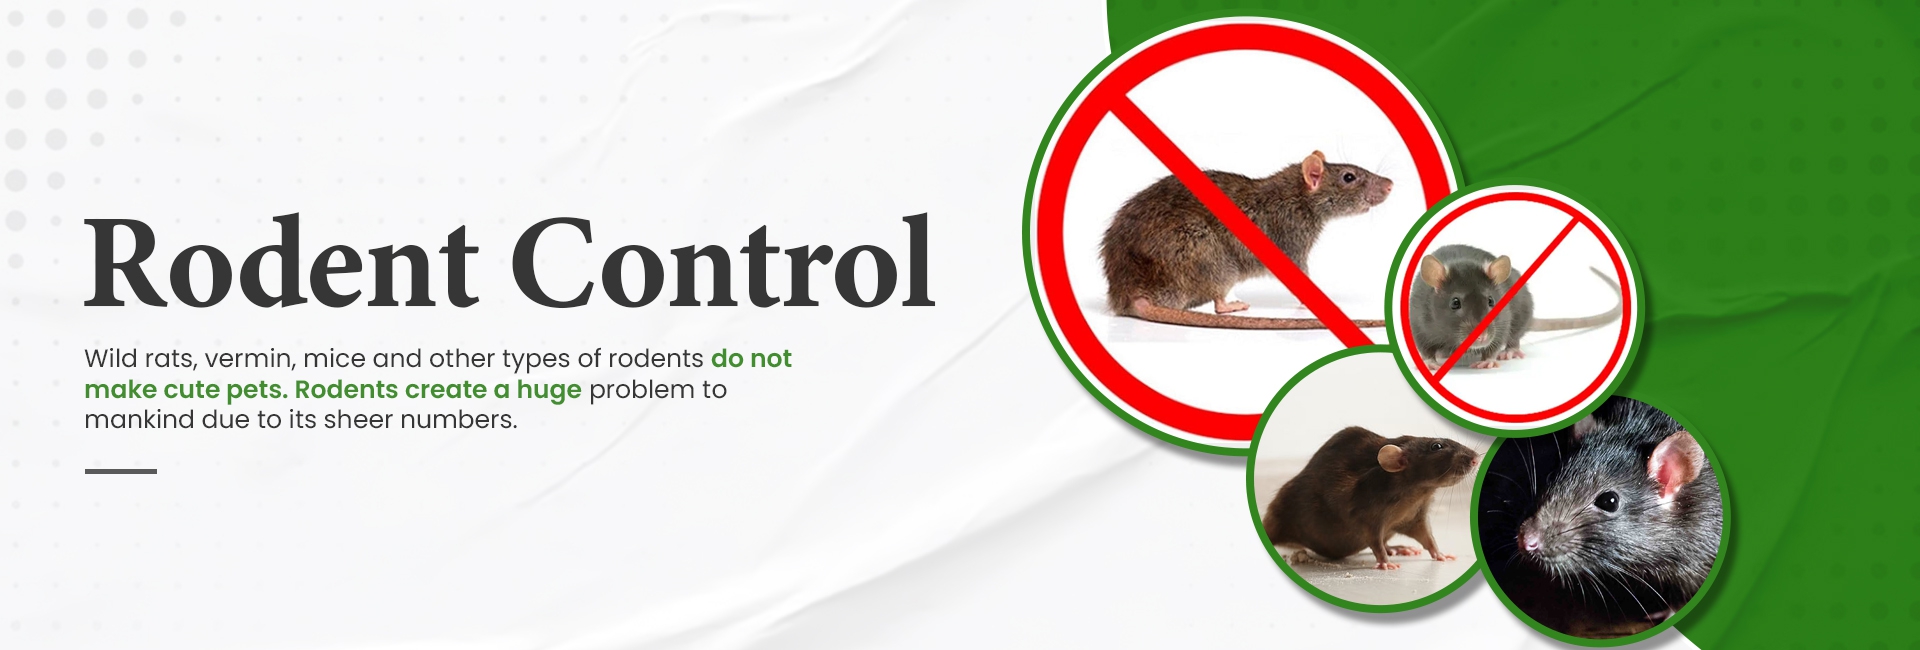 godrej pest control rodent control service